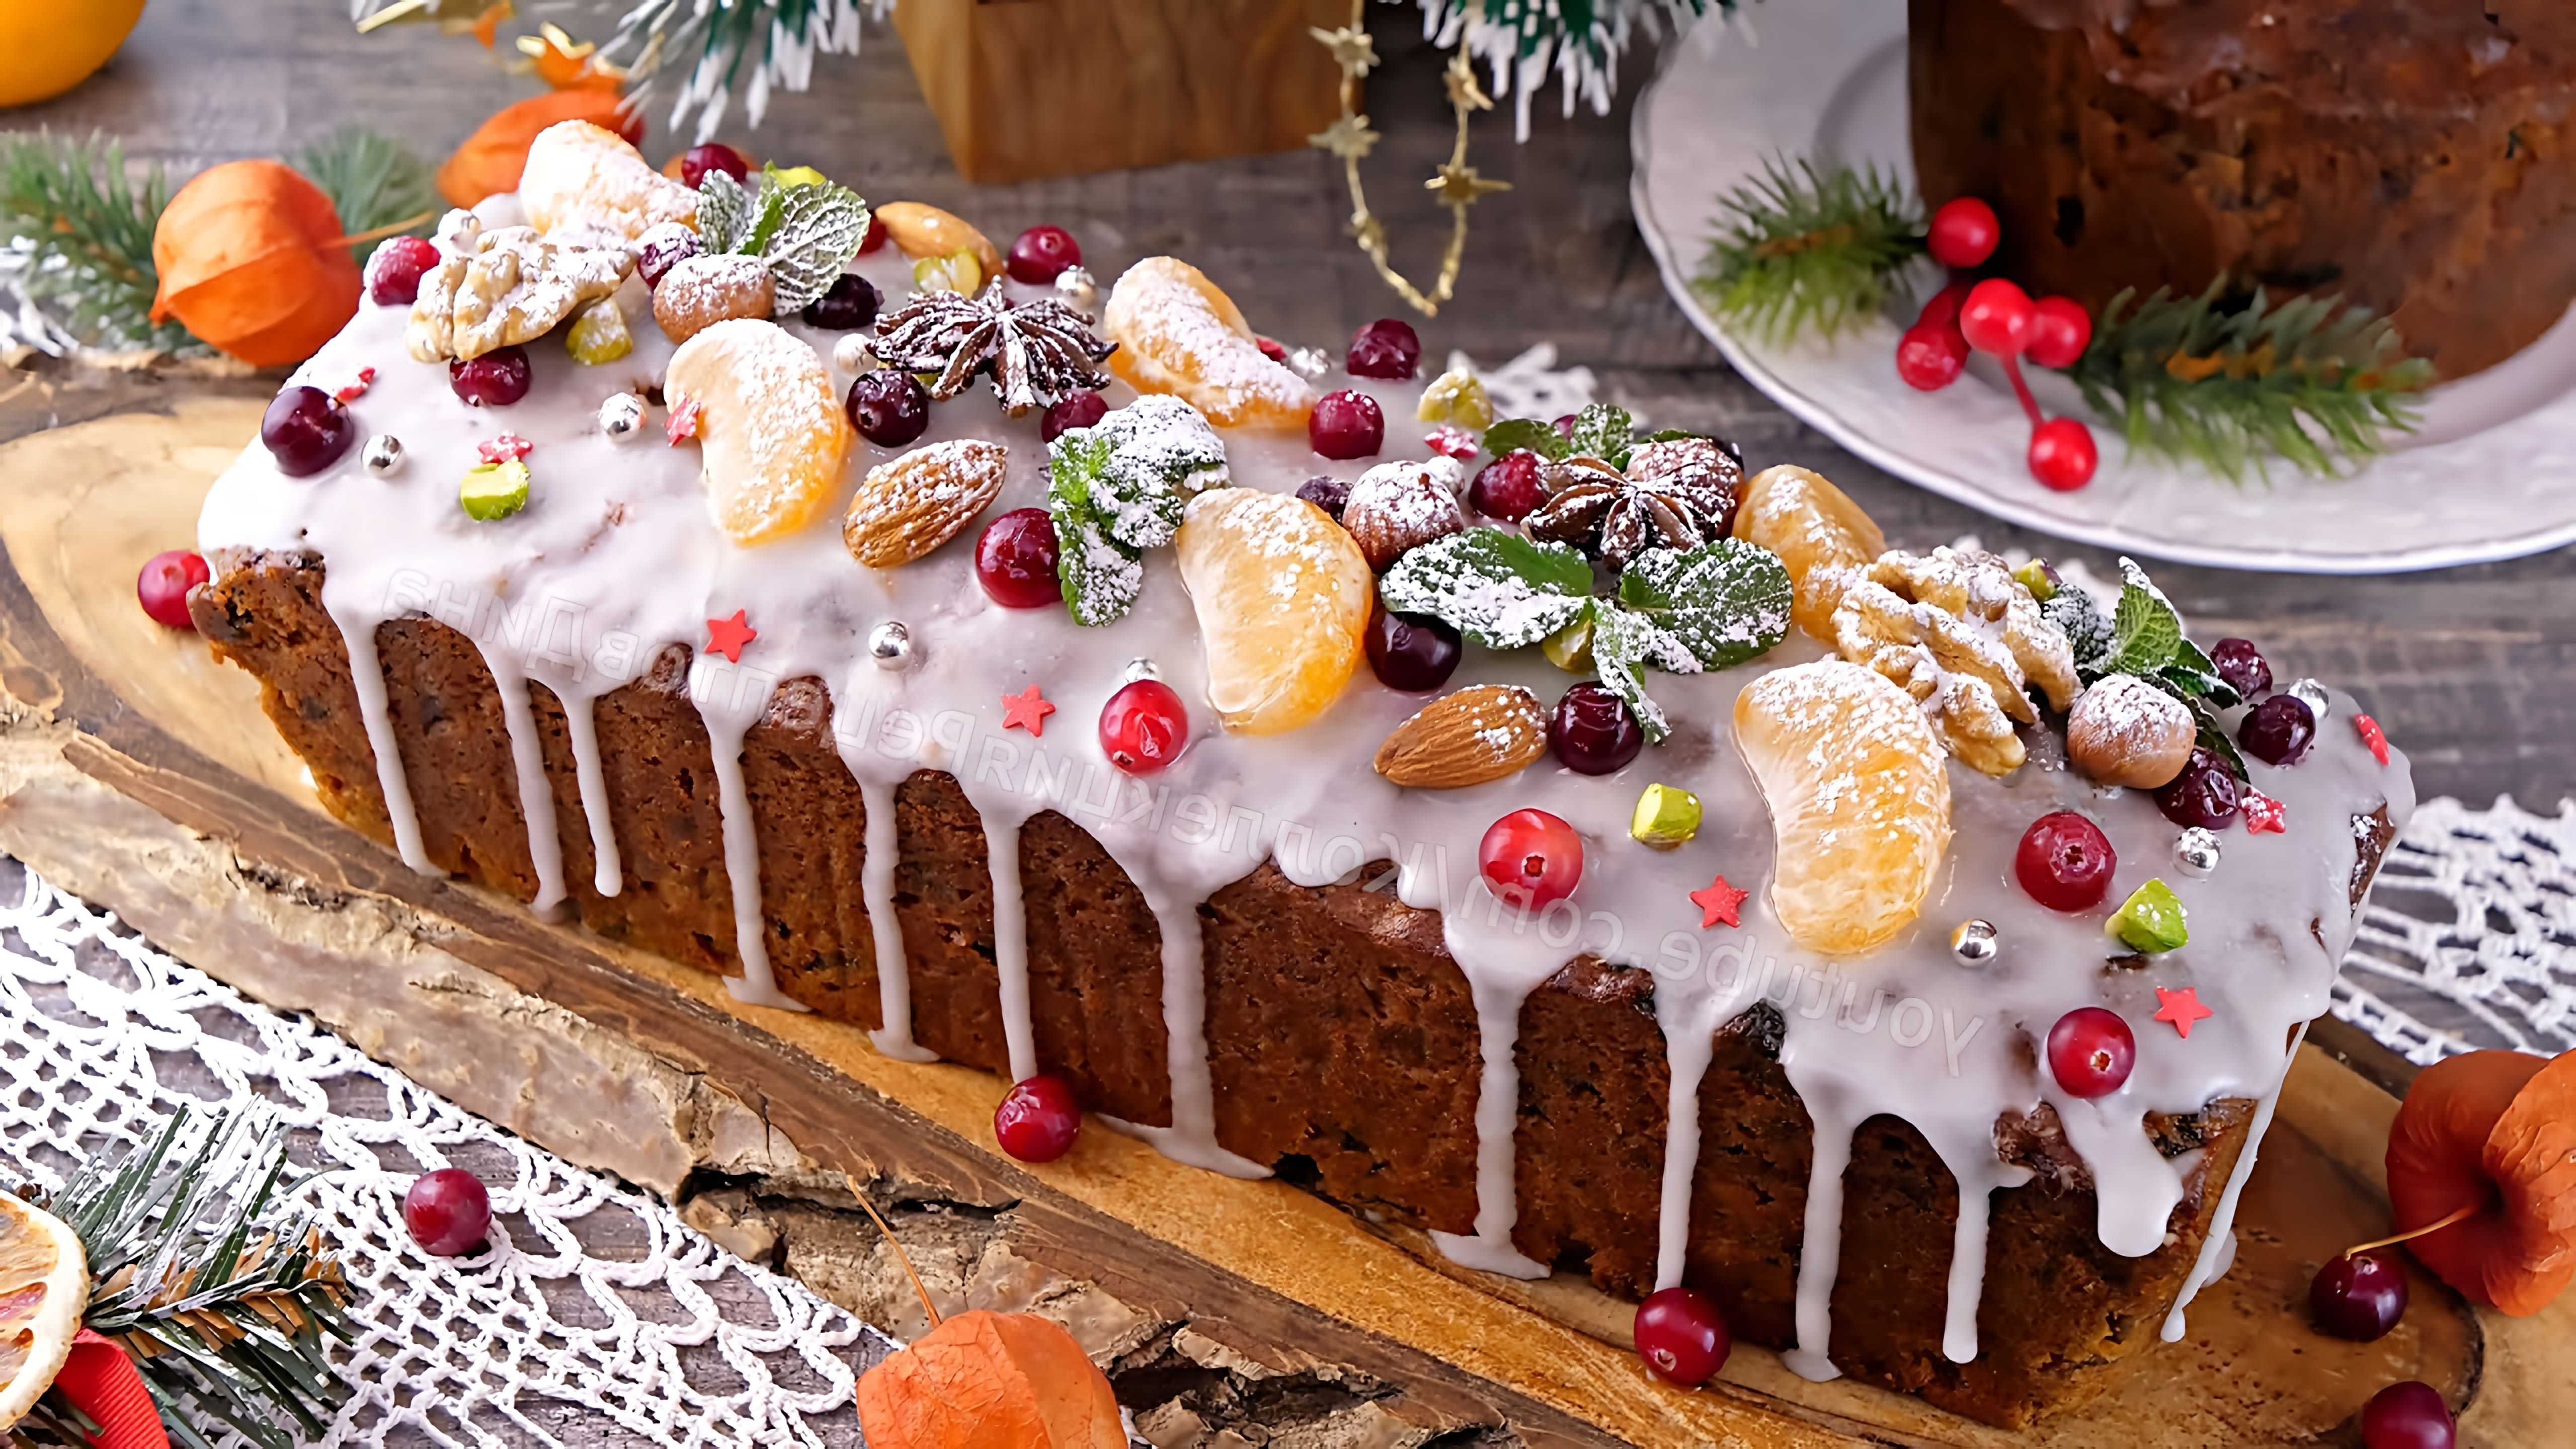 В этом видео демонстрируется рецепт приготовления английского рождественского кекса с цукатами, сухофруктами и орехами